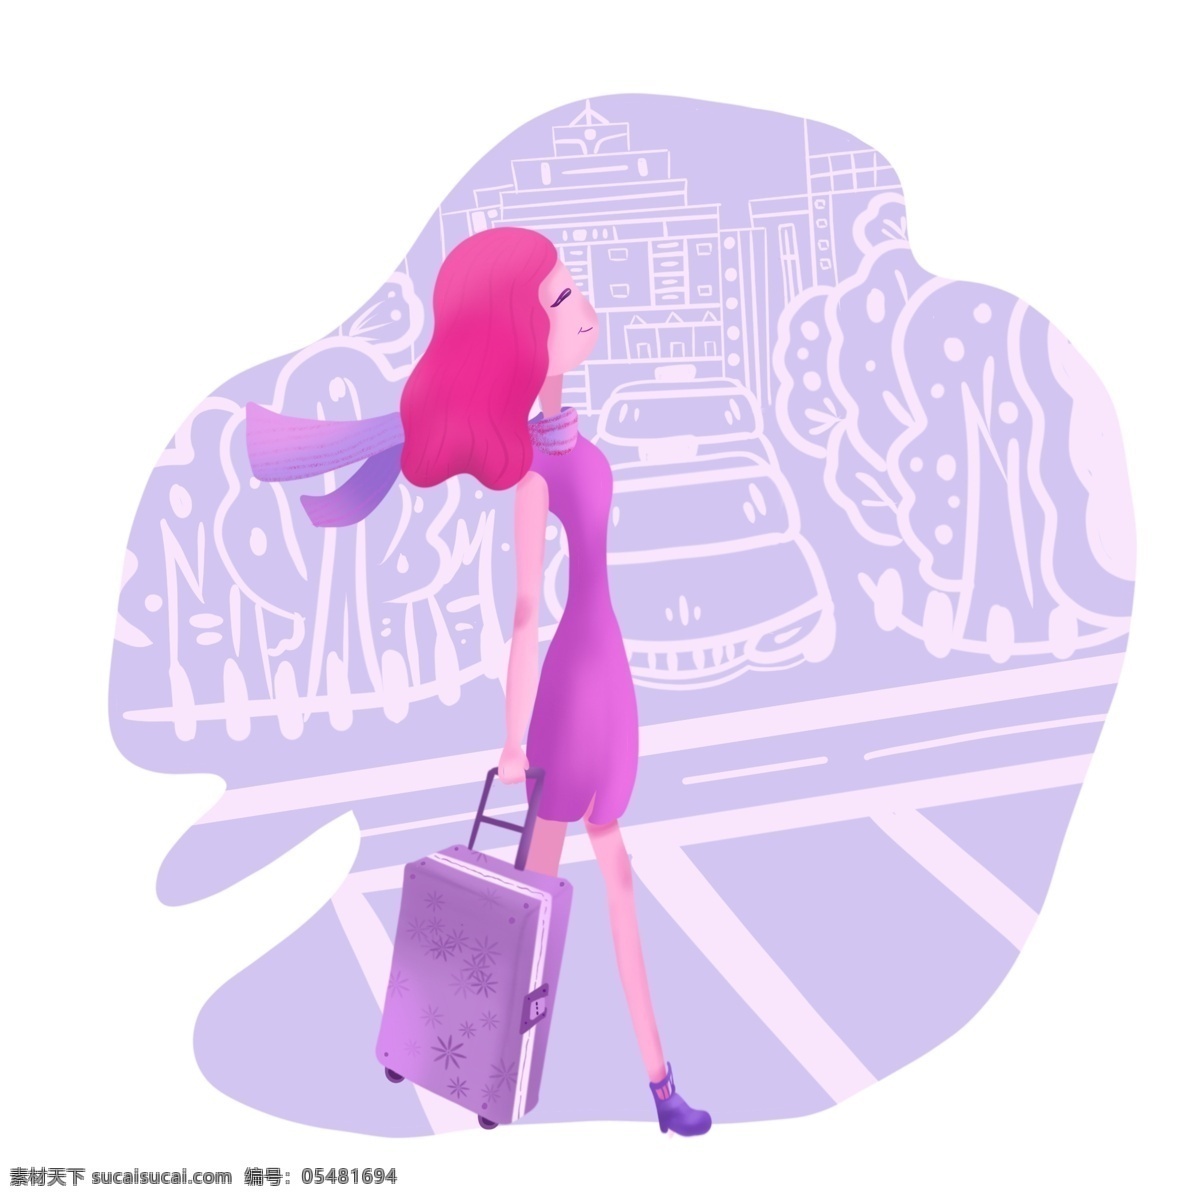 粉色 紫色 独立 女性 虚实 象生 出差 行李箱 白领 旅游 虚实象生 梦幻